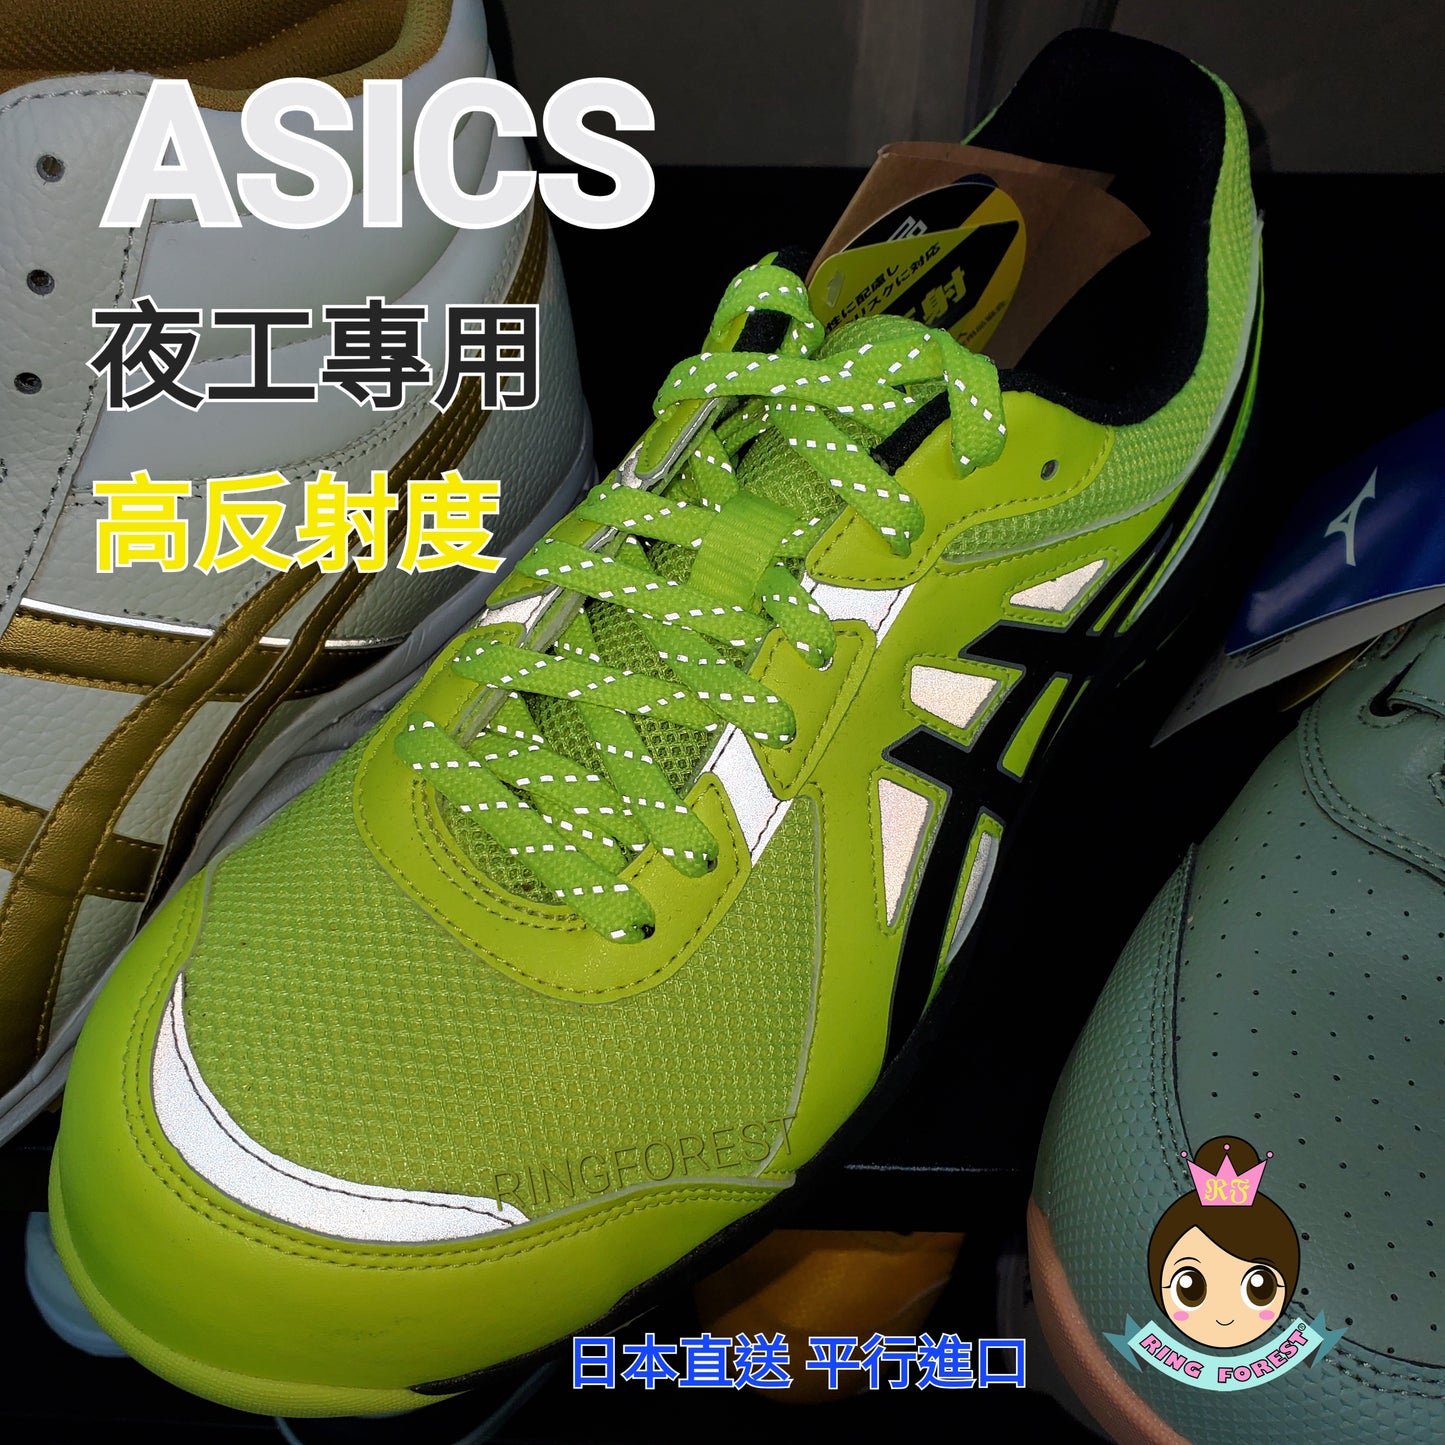 🎌日本🎌 【現貨▪️即寄】ASICS 夜間工作 螢光黃 EU43.5  27cm US9.5 安全鞋 JSAA A級  防滑靴  CP206 JIS CP